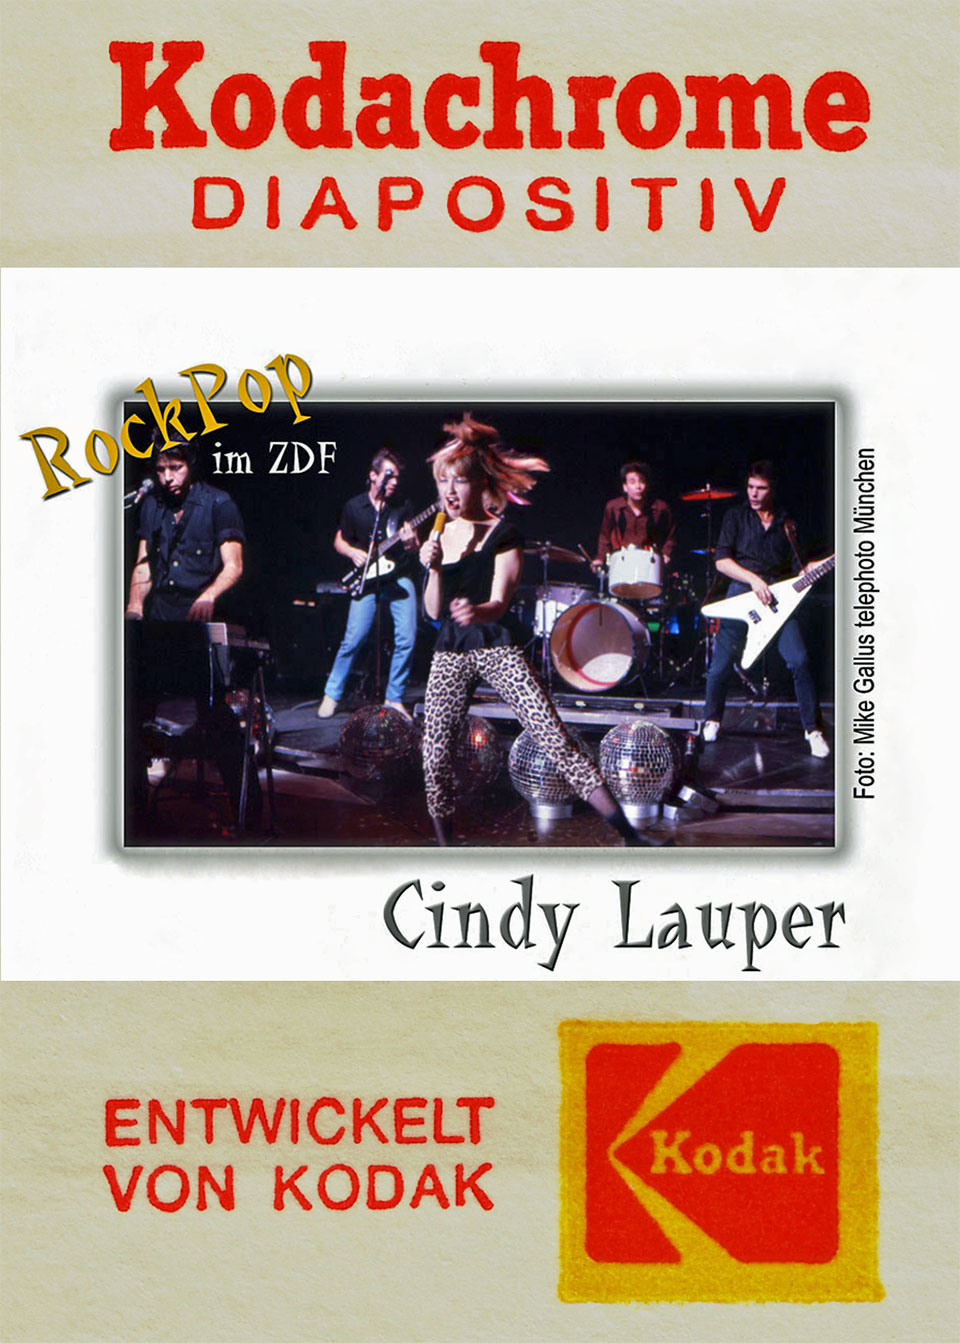 Werbefoto für die Eastman Kodak Company (kurz Kodak genannt) mit dem Auftritt von Cyndy Lauper und ihrer Band „Blue Angel“ bei Rockpop am 6.12.1989 im ZDF, über dem Foto steht „Kodakchrome Diapositiv) und unterhalb steht „Entwickelt von Kodak"